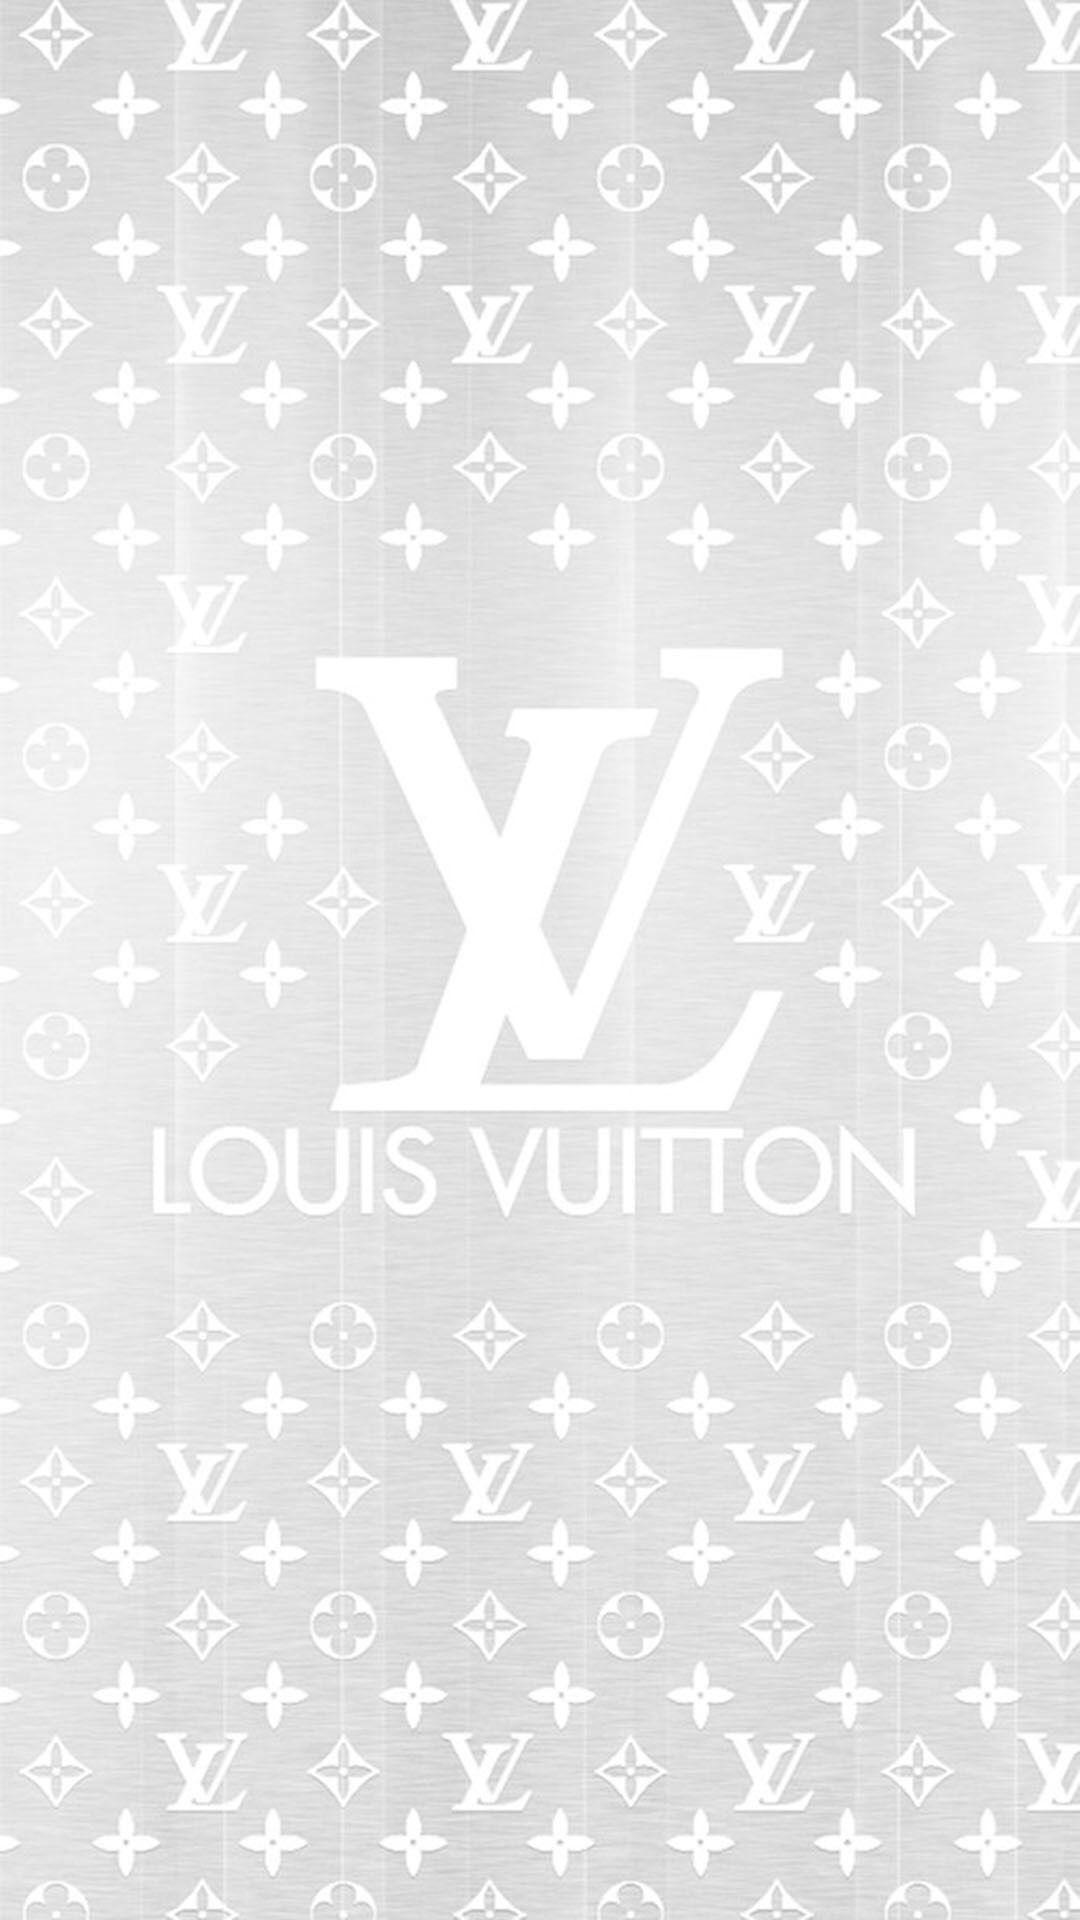 Louis Vuitton Aesthetic Wallpapers - Top Những Hình Ảnh Đẹp